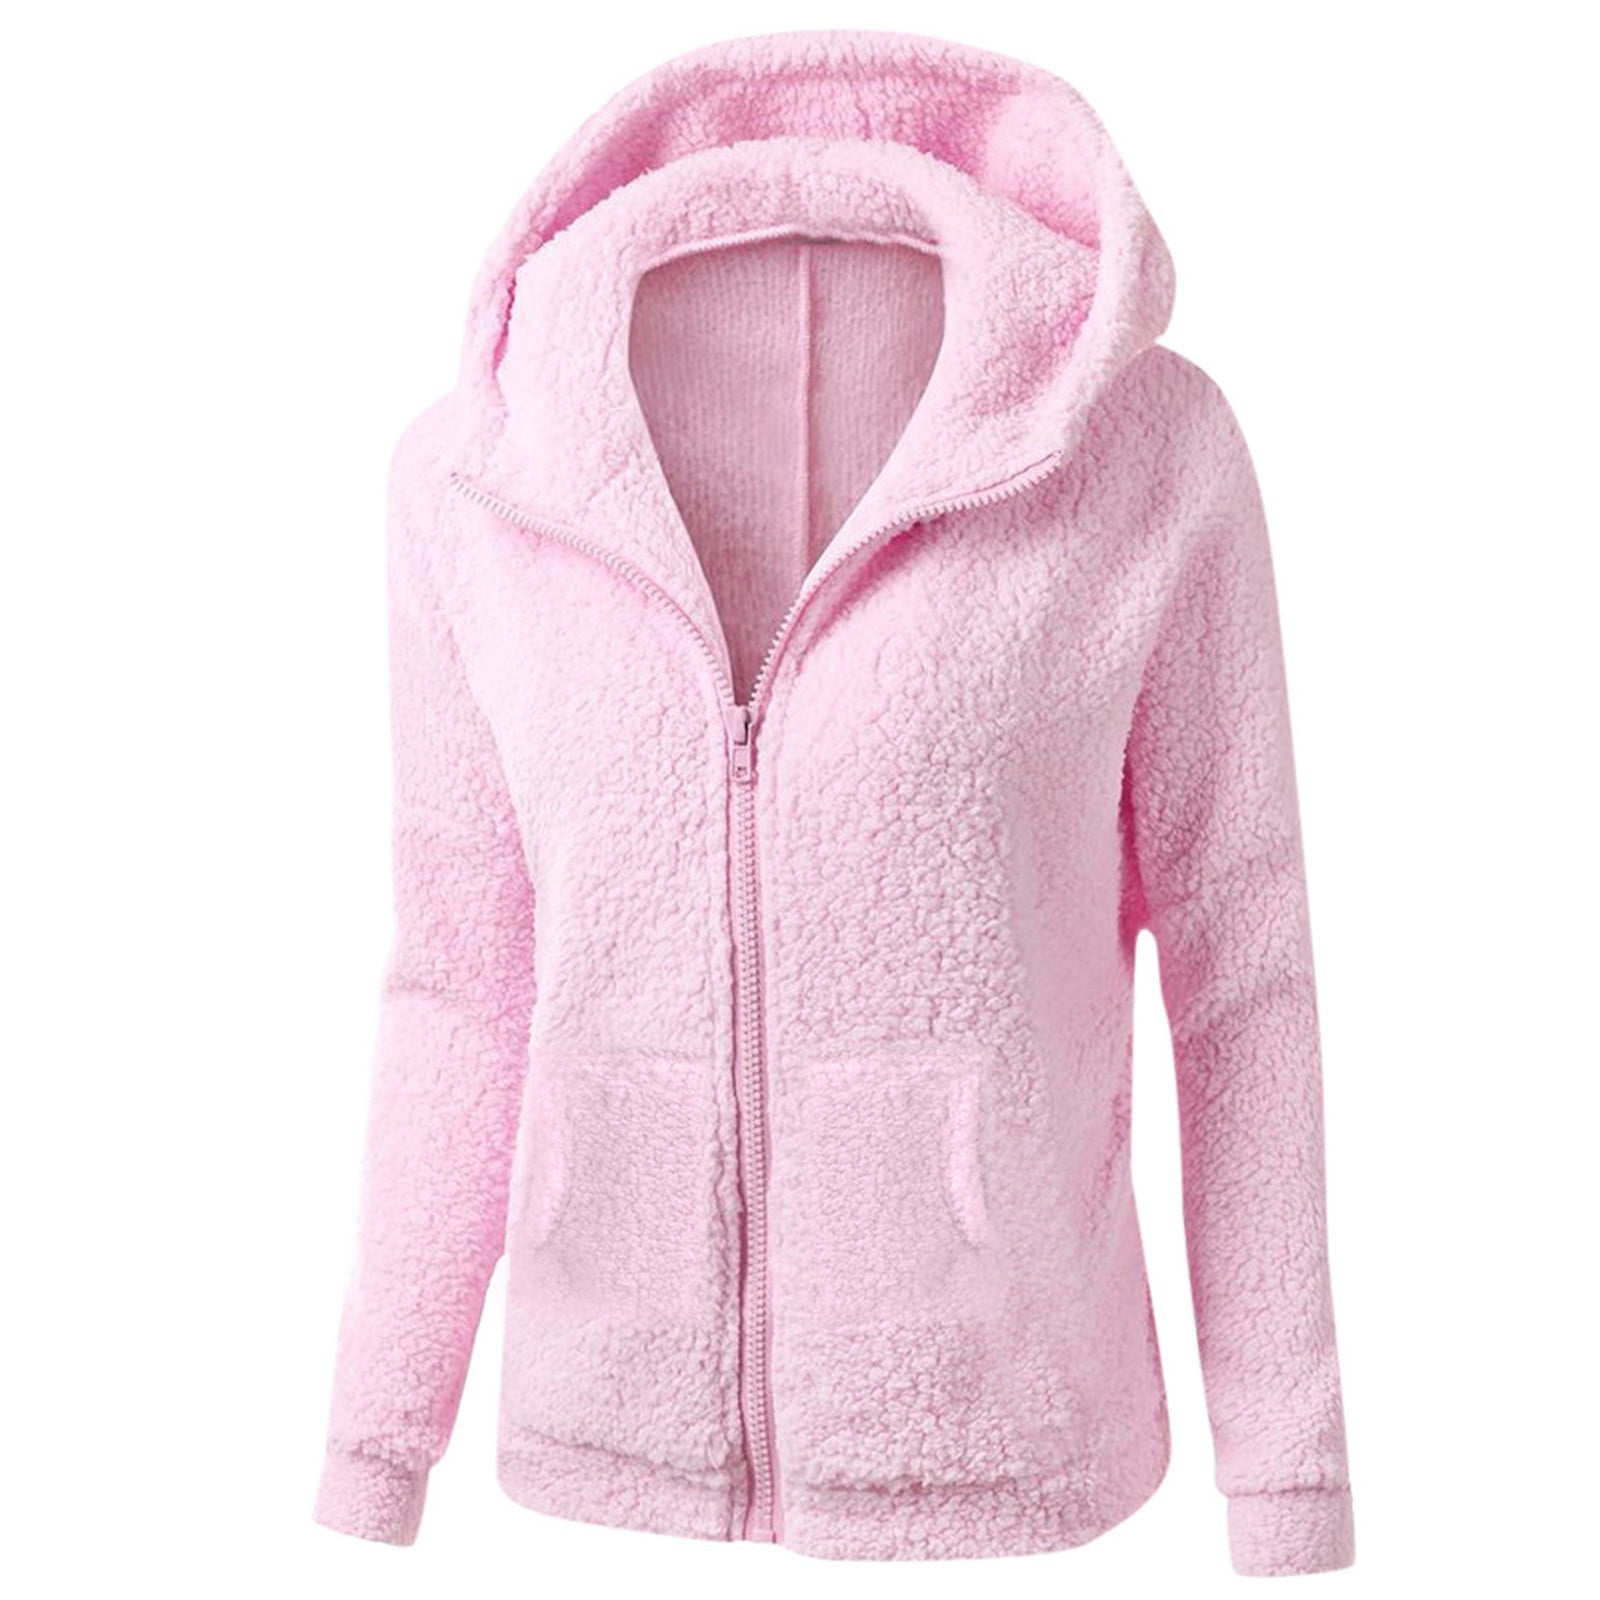 TQWQT Fuzzy Fleece Winter Coats for Women Plus Size Zip Up Hoodie ...